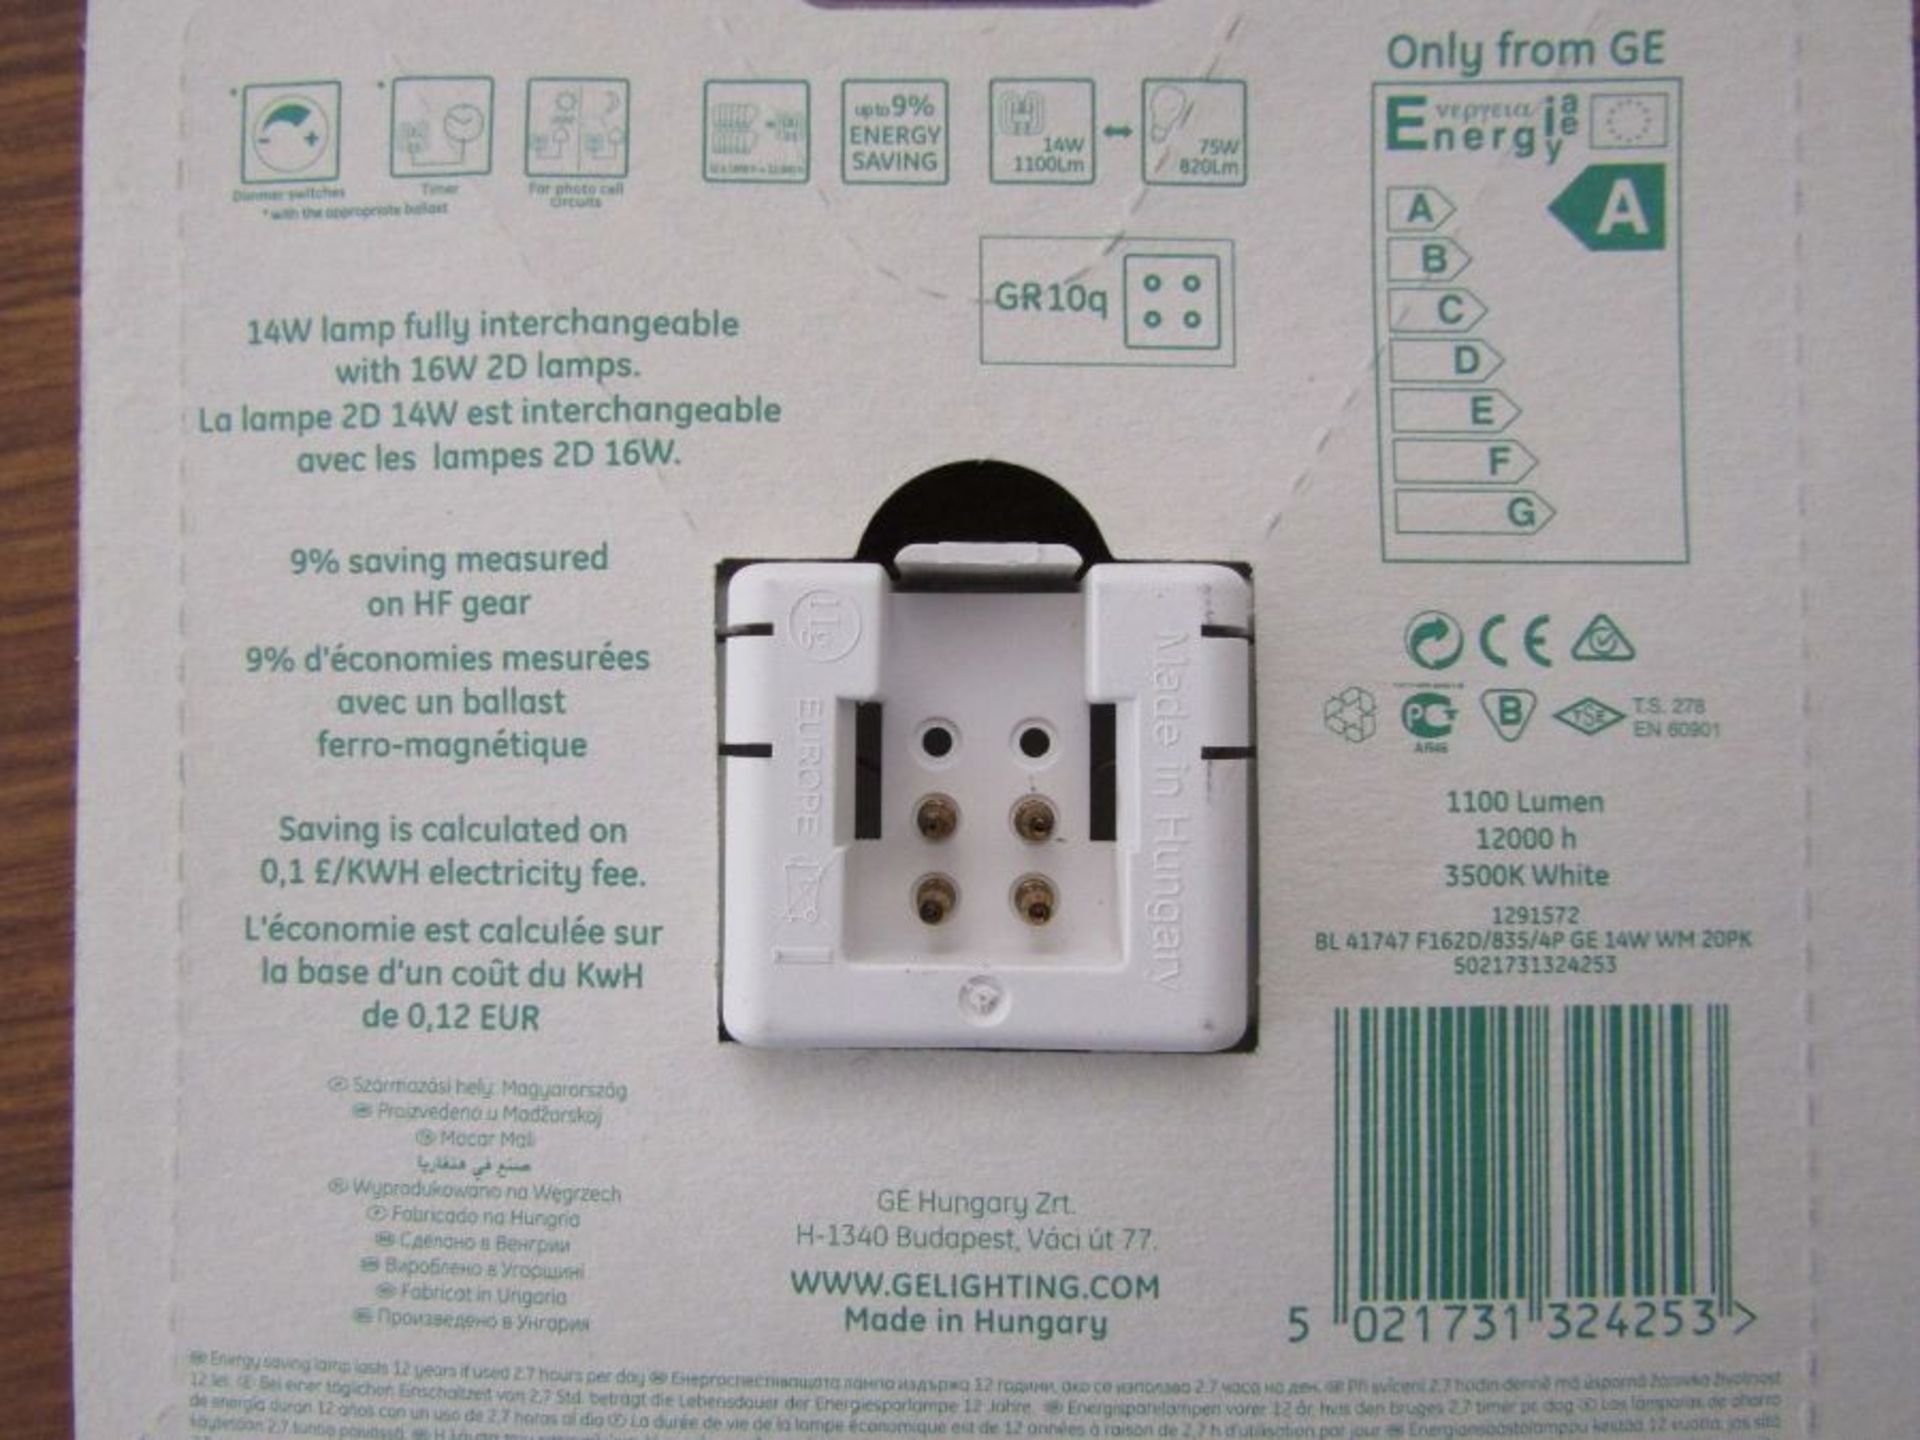 40 x GE 32425 16W 4 pin 2D Emergency Lighting Lamp CFL - 3500k White - 575885 - Image 2 of 2